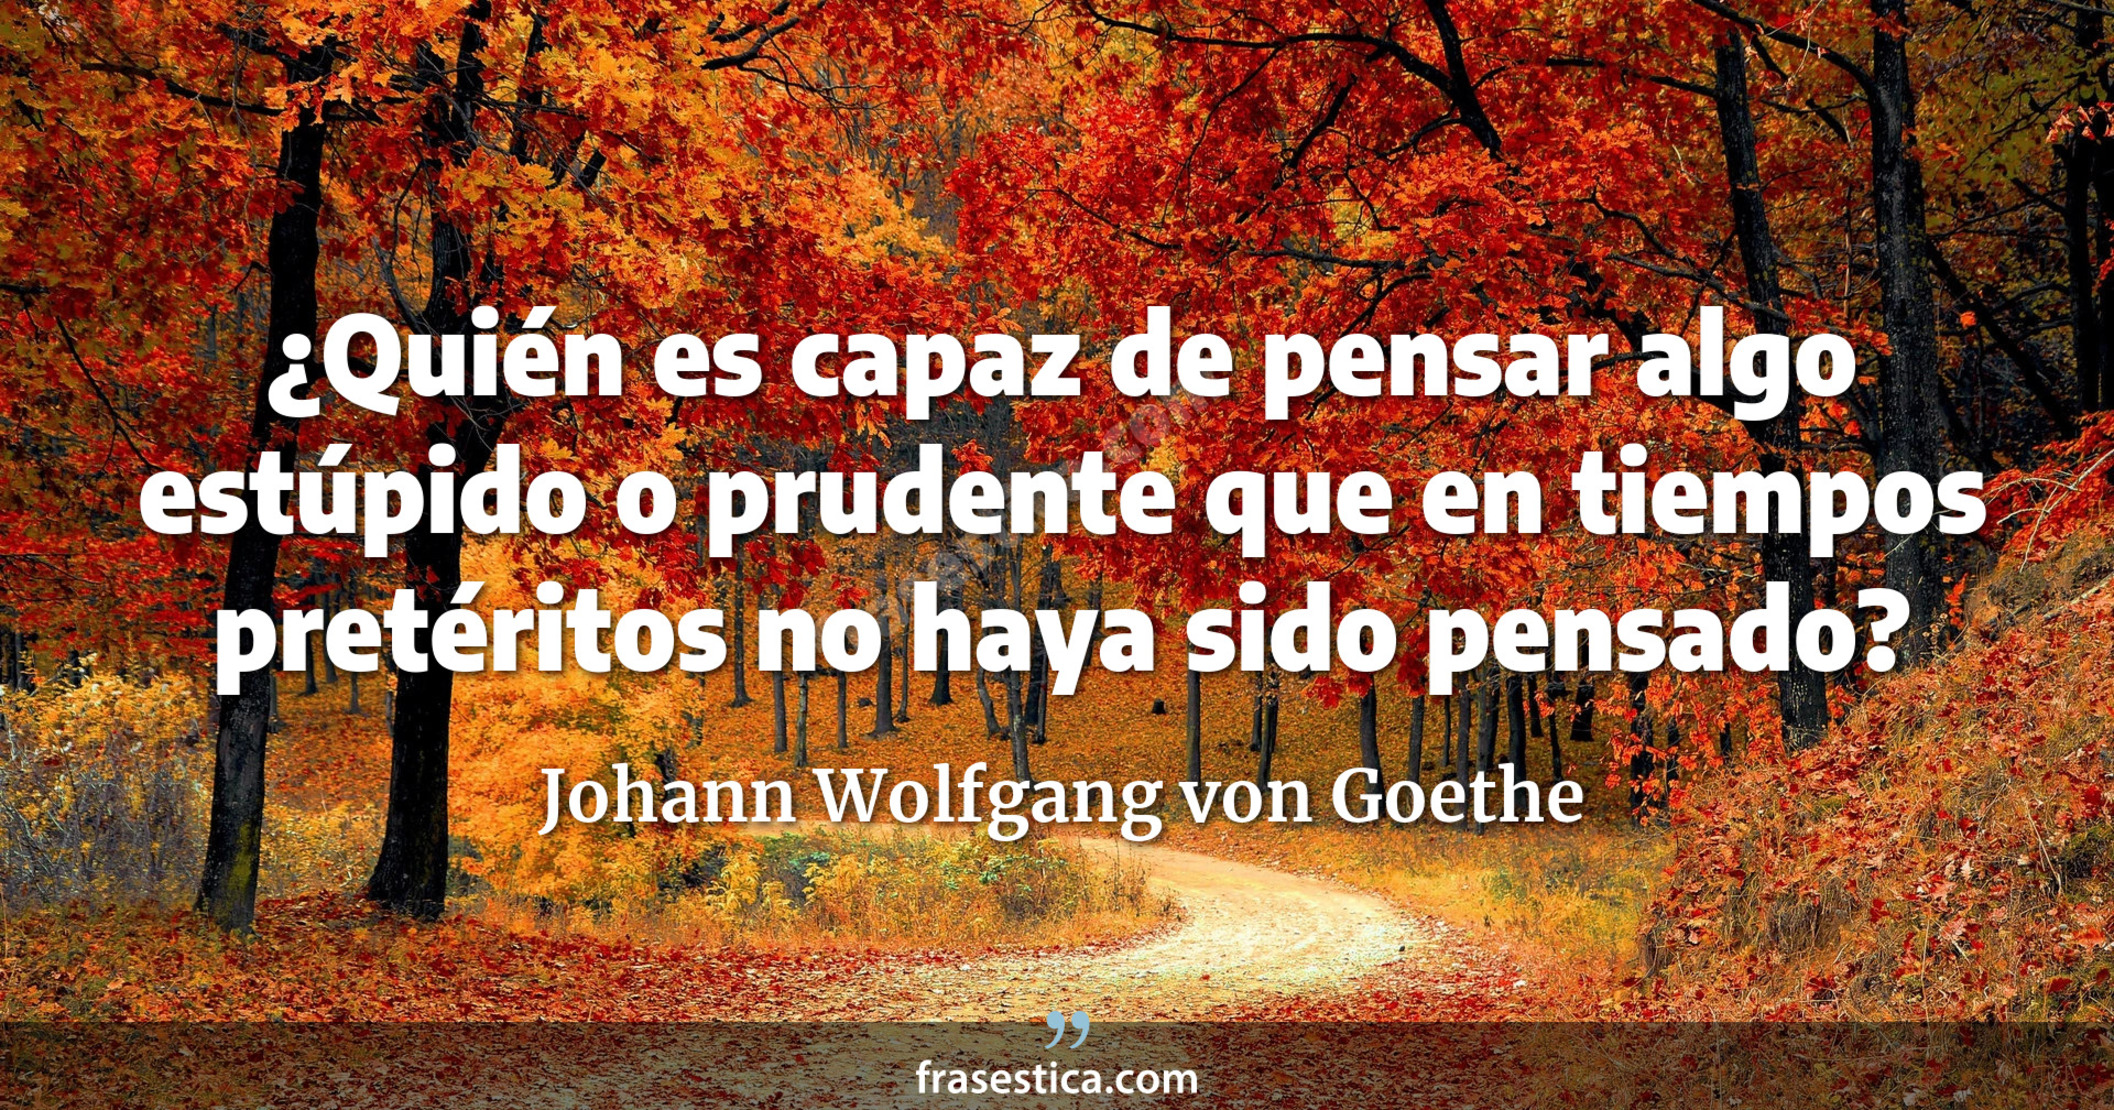 ¿Quién es capaz de pensar algo estúpido o prudente que en tiempos pretéritos no haya sido pensado? - Johann Wolfgang von Goethe